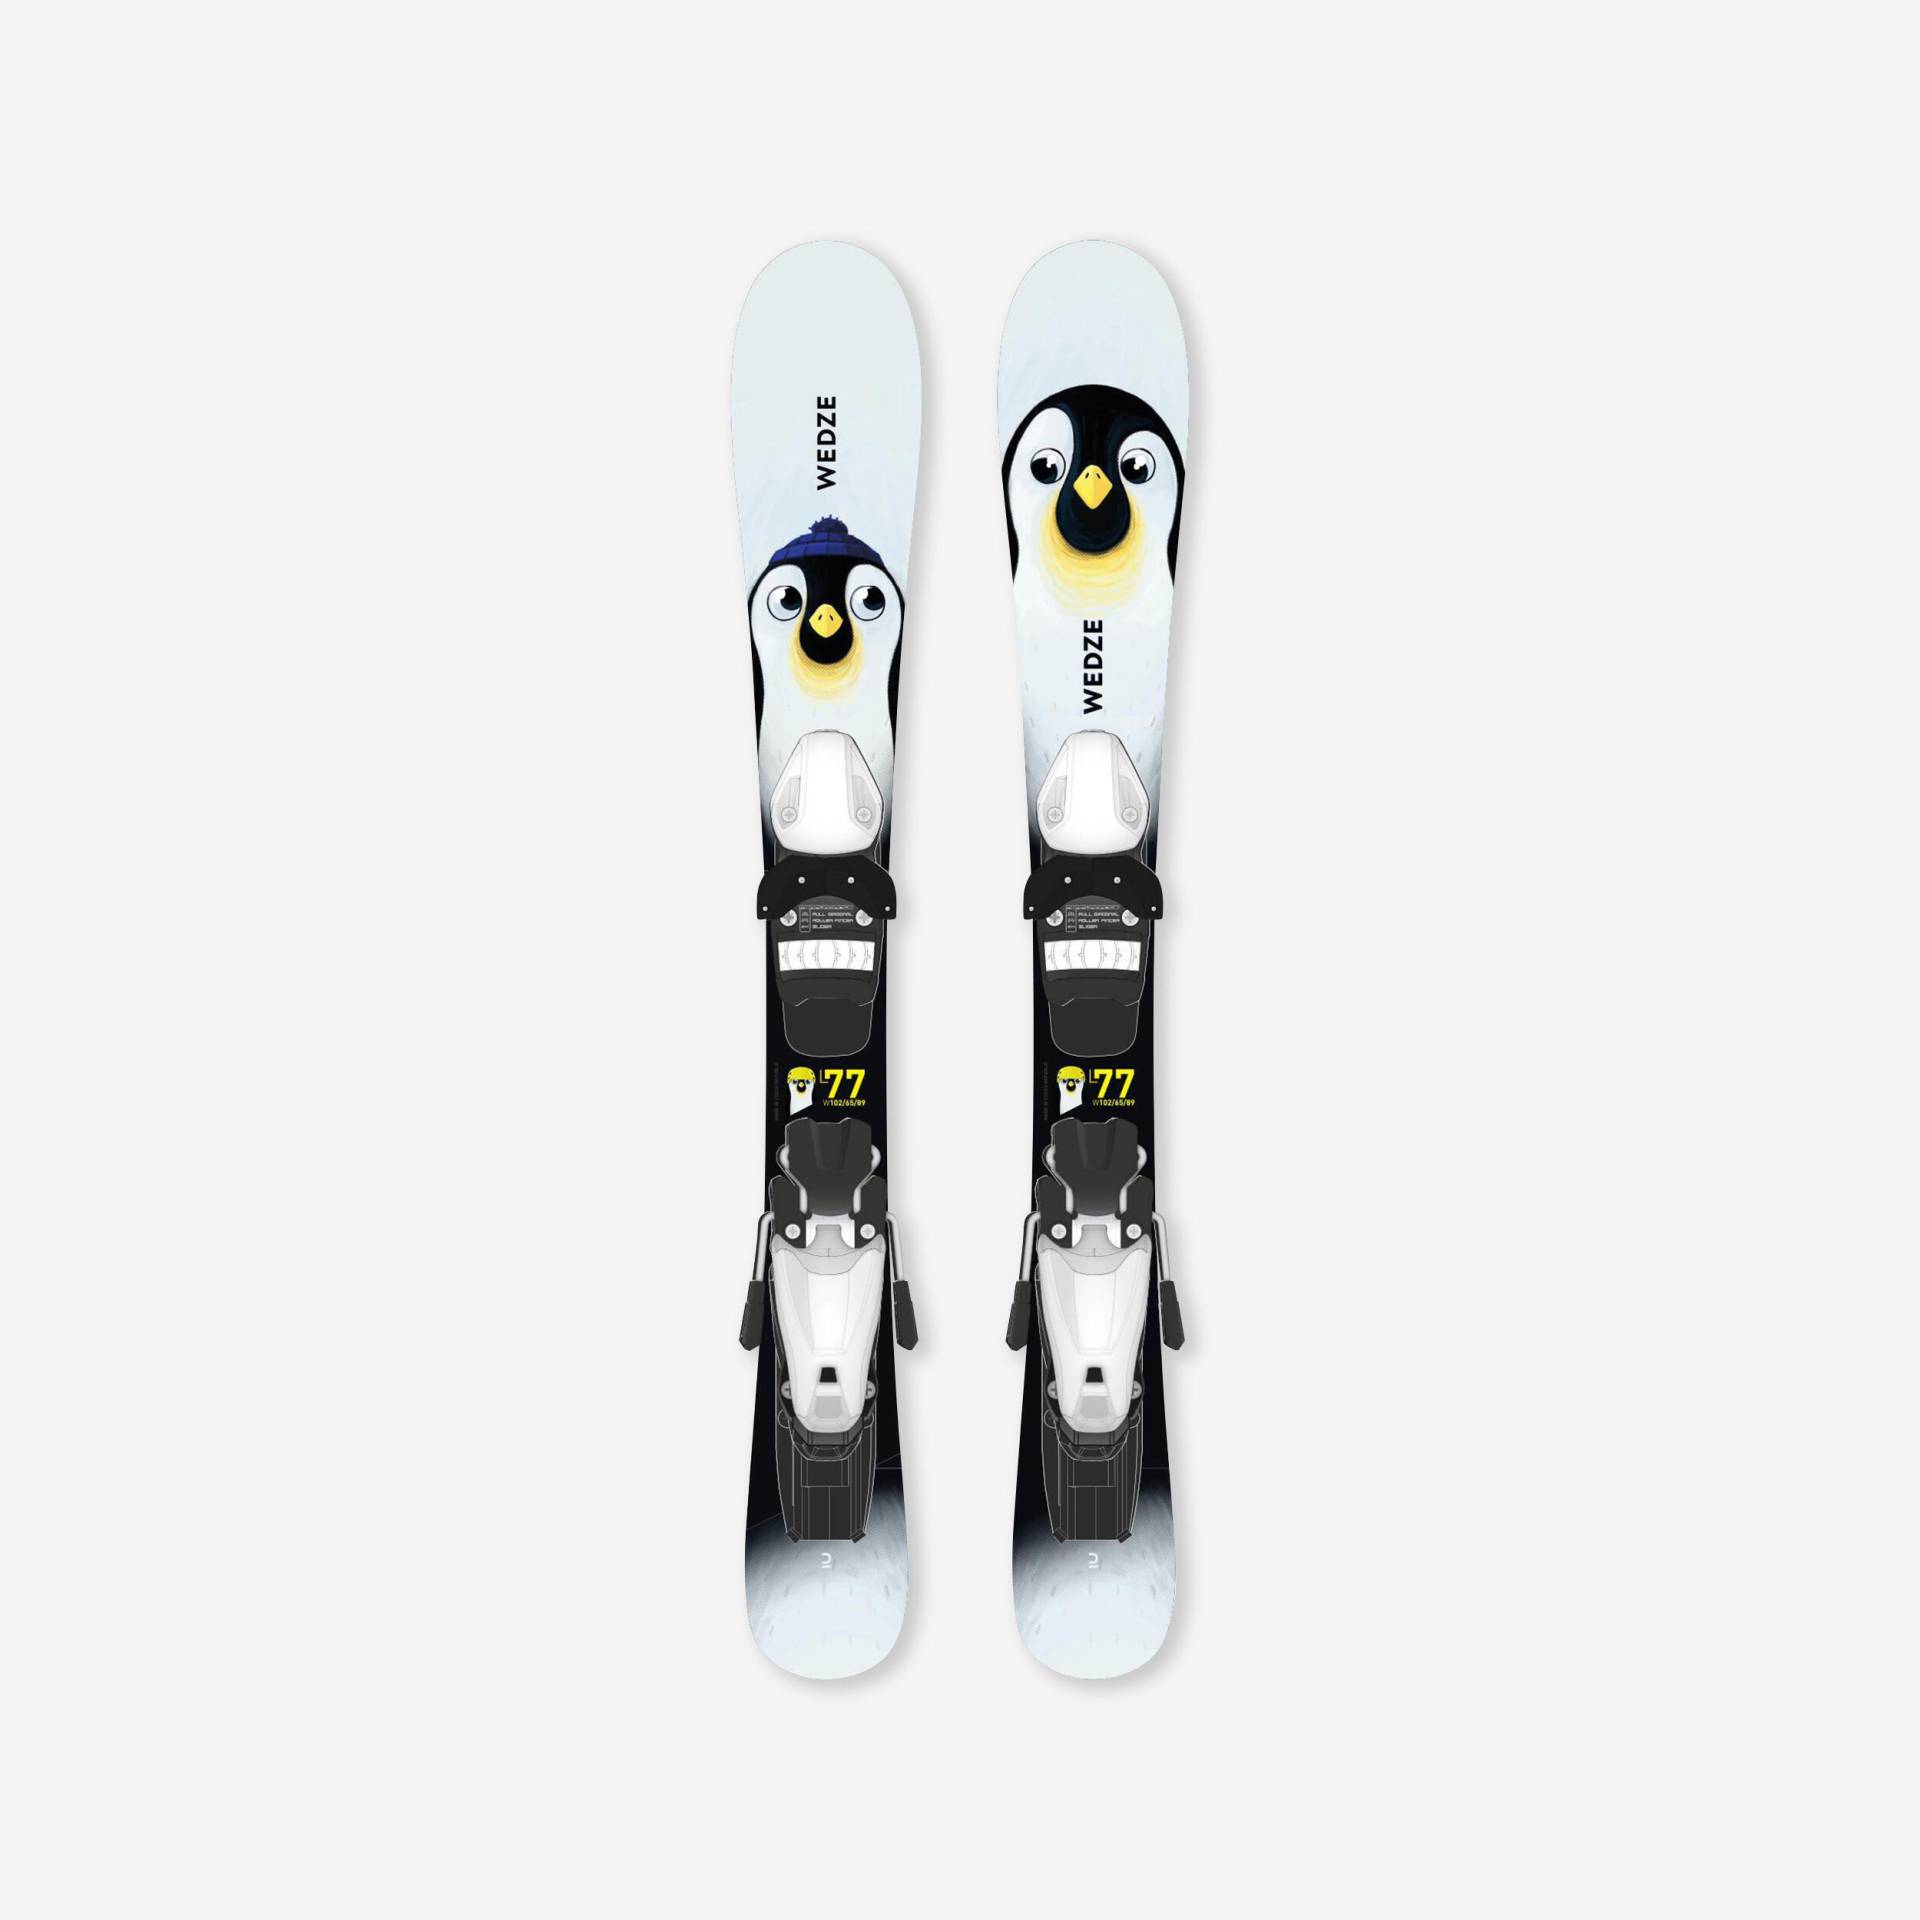 Ski Kinder mit Bindung Piste - Boost 100 Pinguin von WEDZE